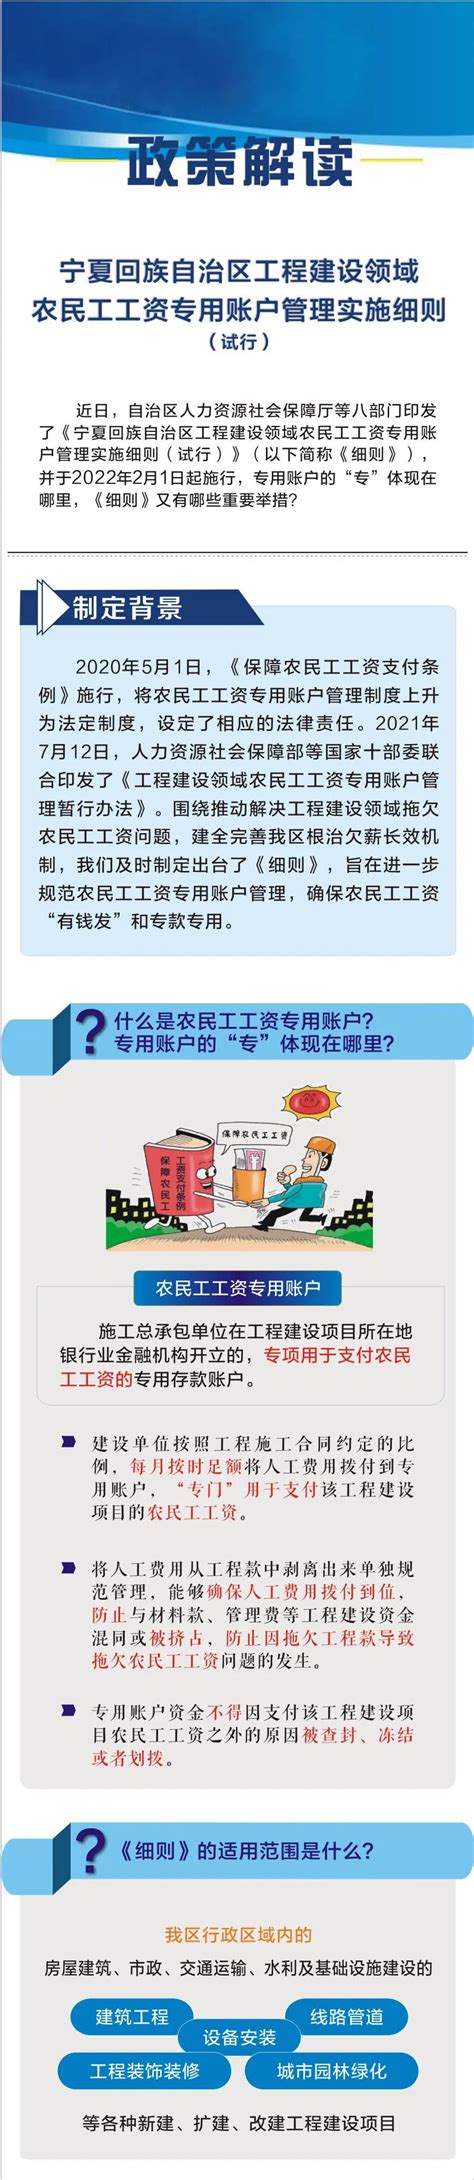 2021年宁夏城镇非私营单位就业人员年平均工资105266元_宁夏回族自治区发展和改革委员会